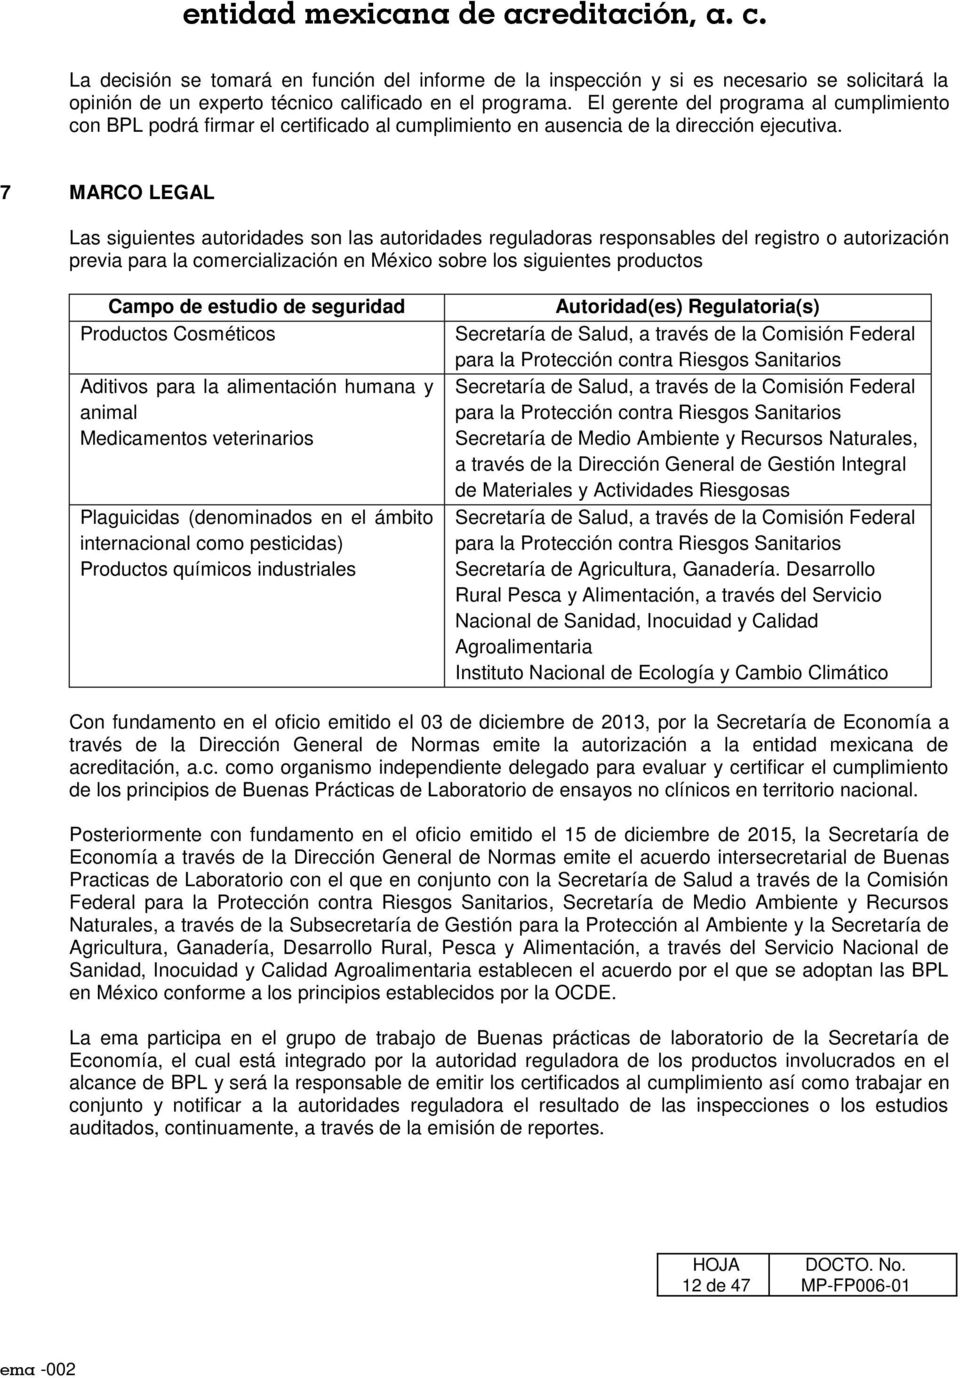 7 MARCO LEGAL Las siguientes autoridades son las autoridades reguladoras responsables del registro o autorización previa para la comercialización en México sobre los siguientes productos Campo de